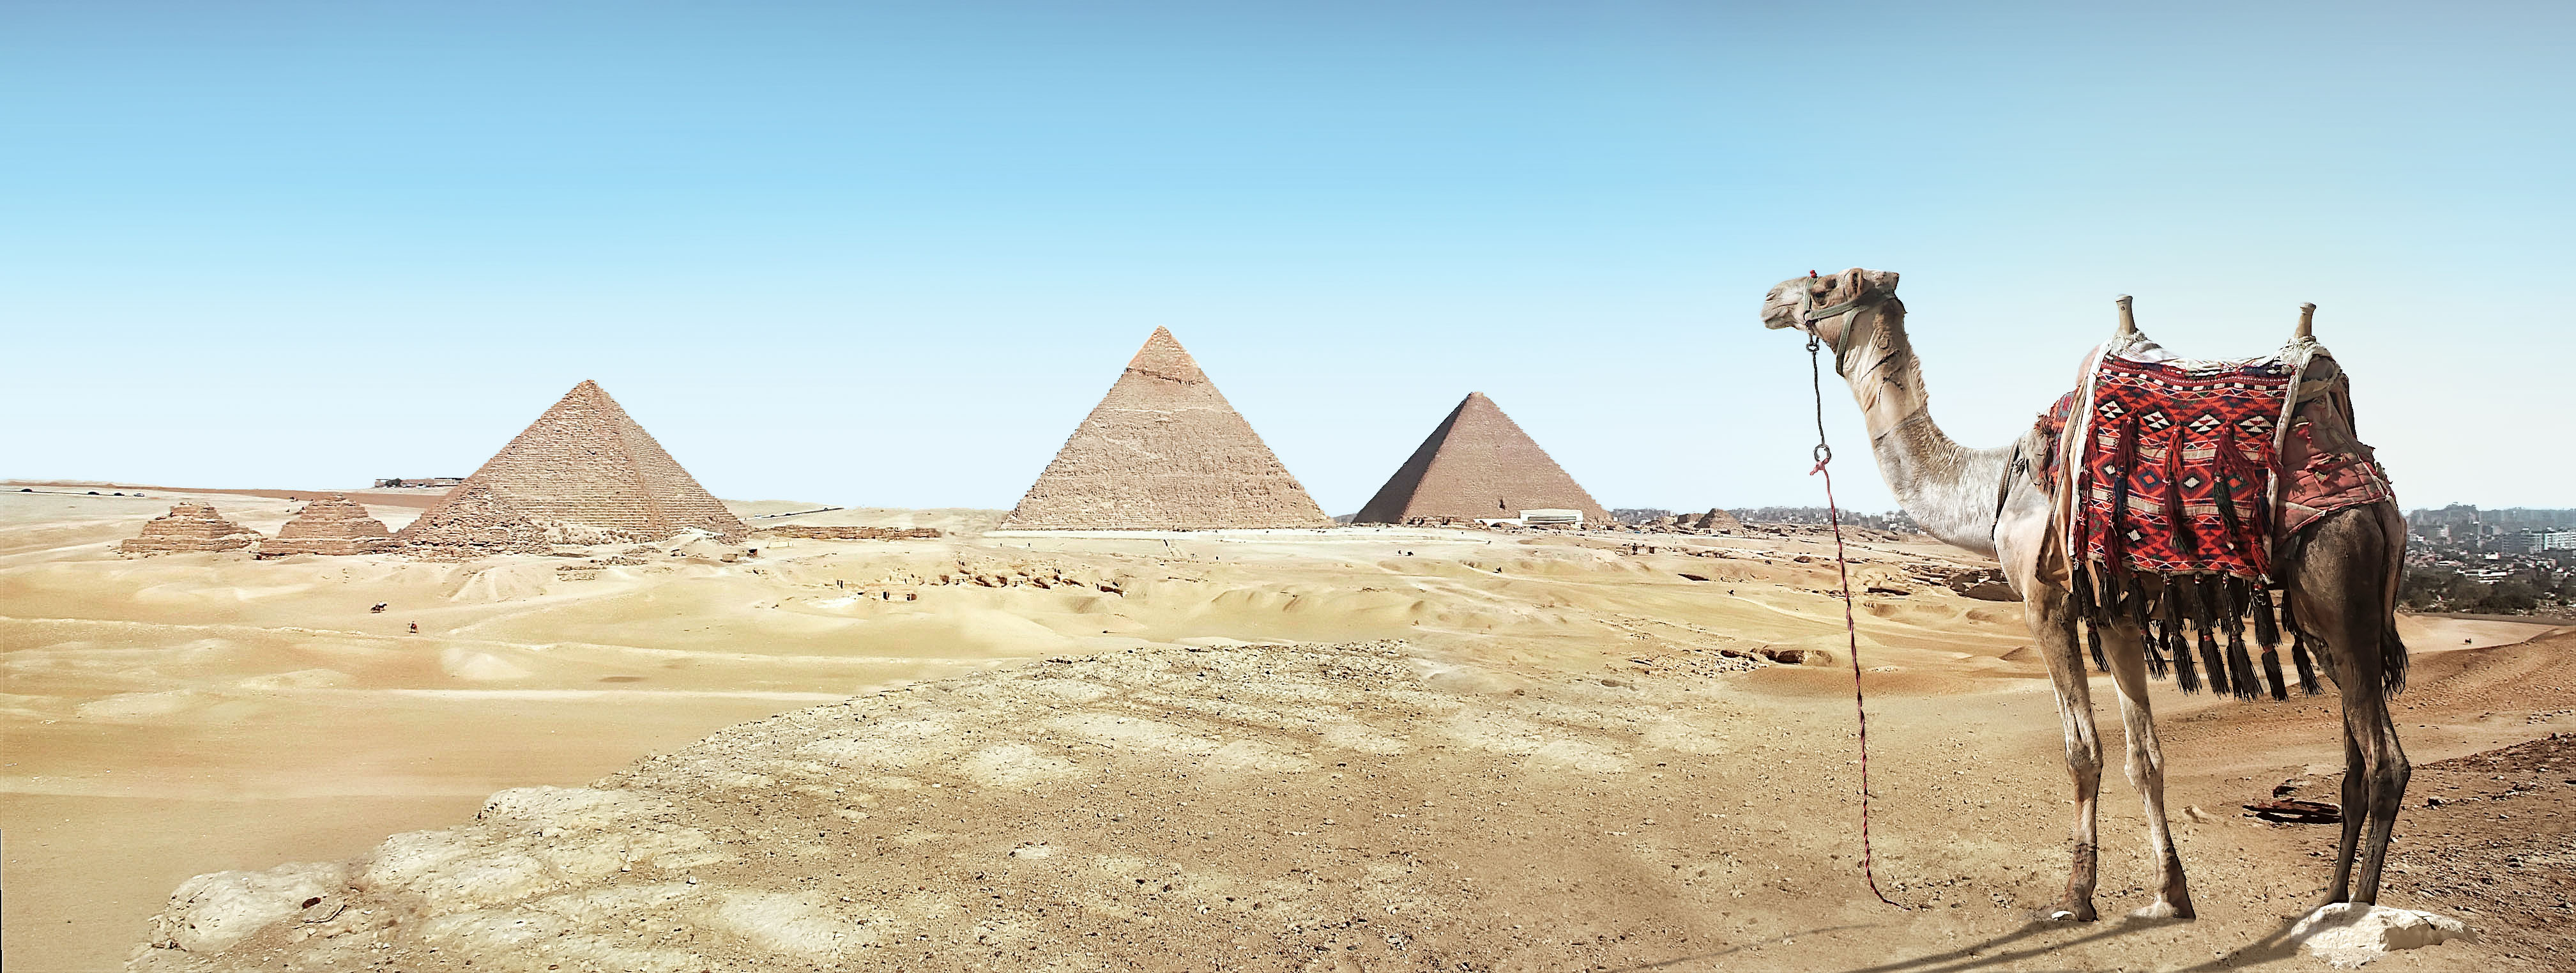 A camel against the pyramids